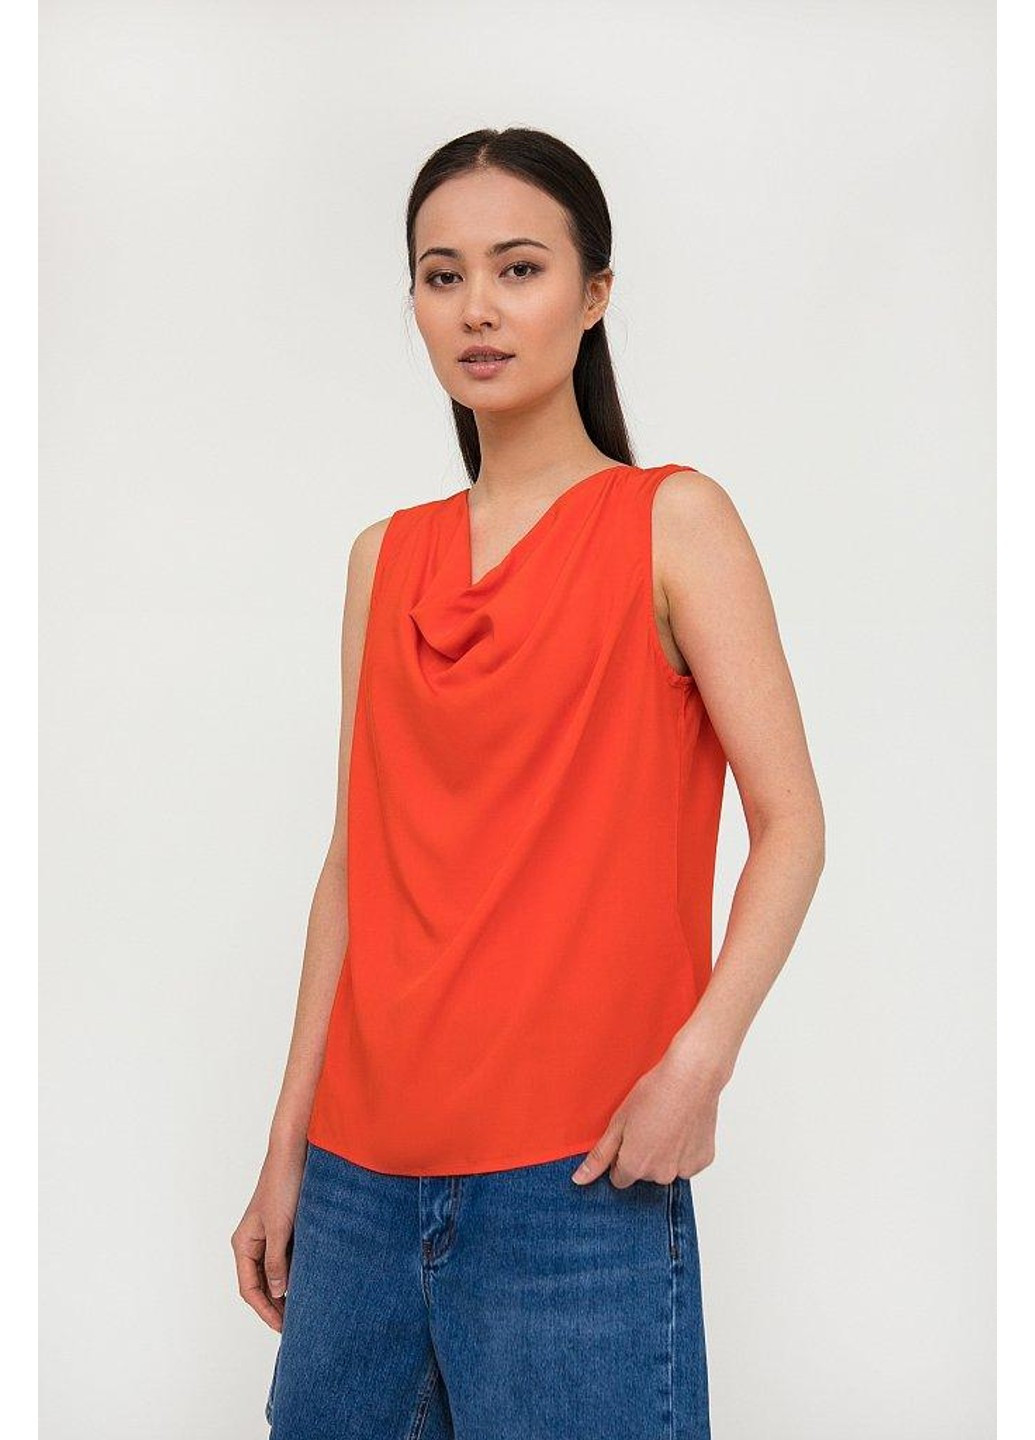 Красная летняя блуза s20-14015-420 Finn Flare